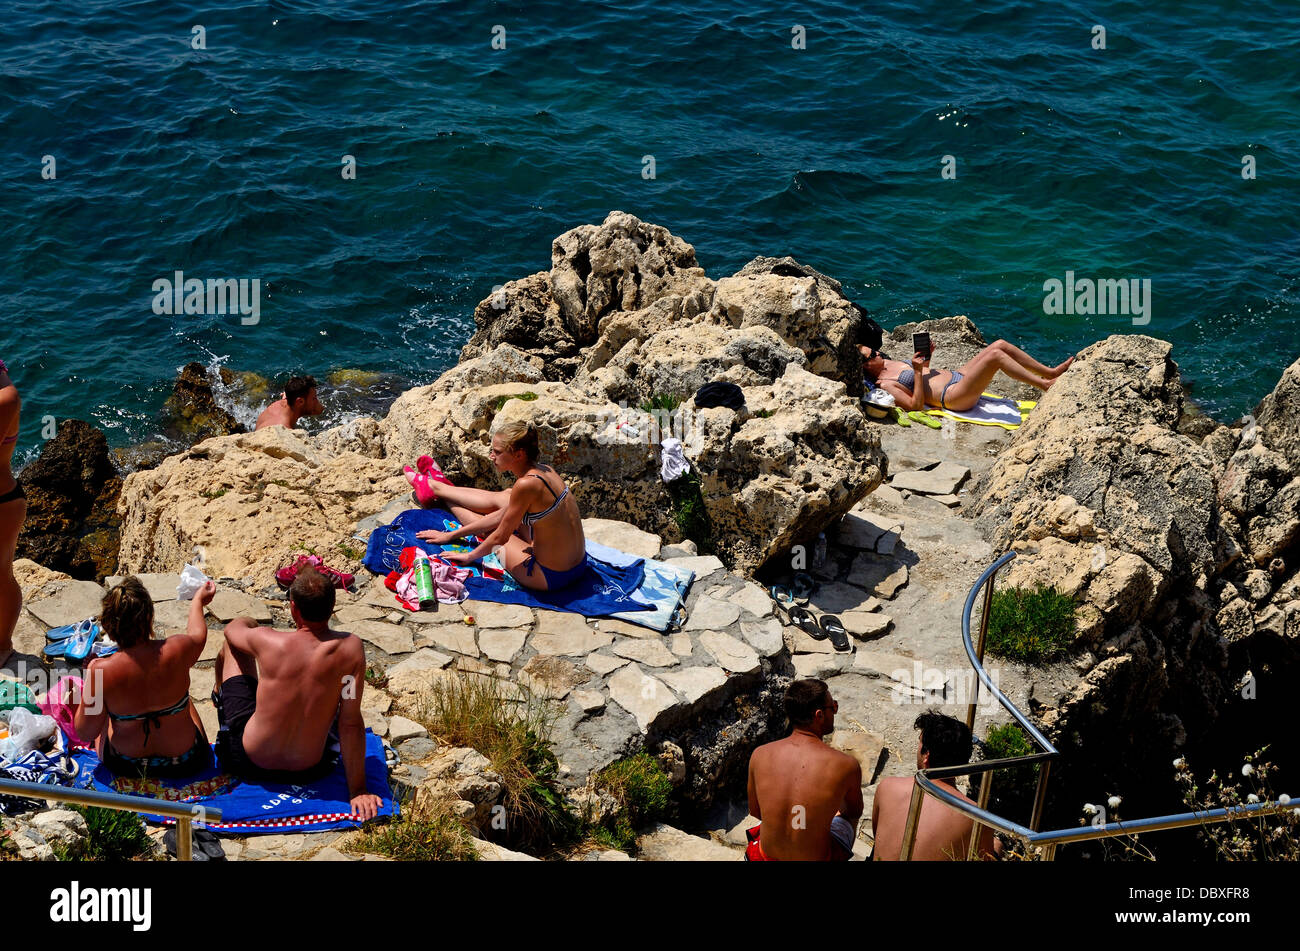 Rovinj beach immagini e fotografie stock ad alta risoluzione - Alamy